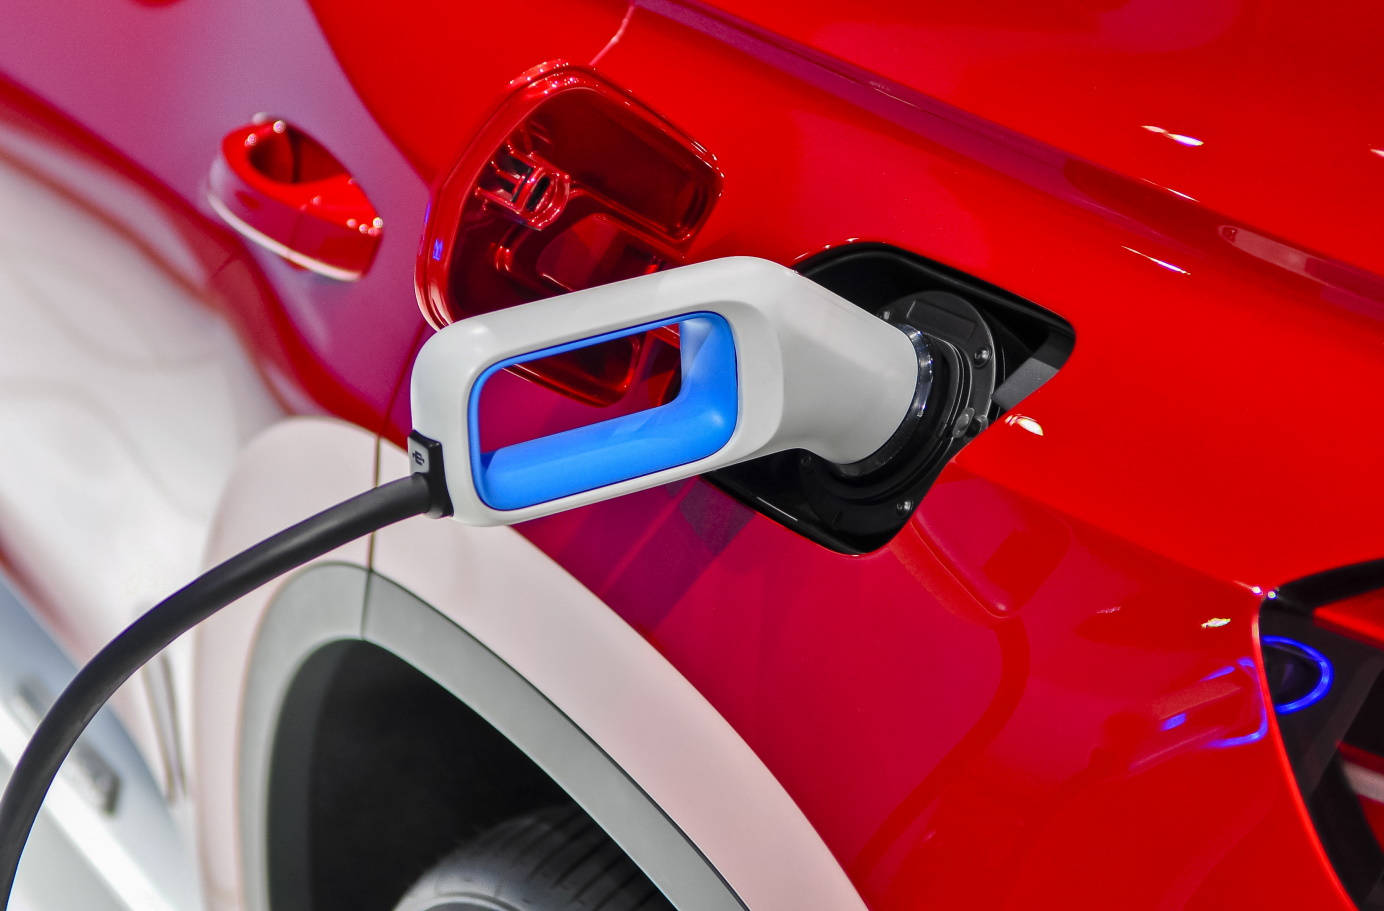 Ventes de voitures électriques et hybrides : 6e mois consécutif à plus de 10 % de parts de marché